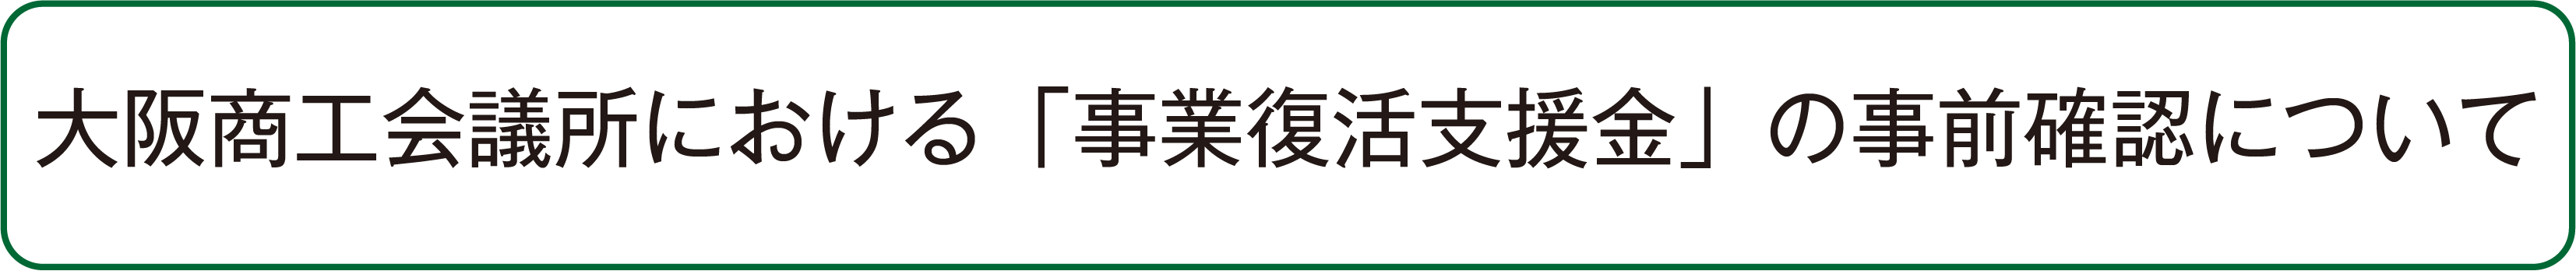 大阪商工会議所における「事業復活支援金」の事前確認について